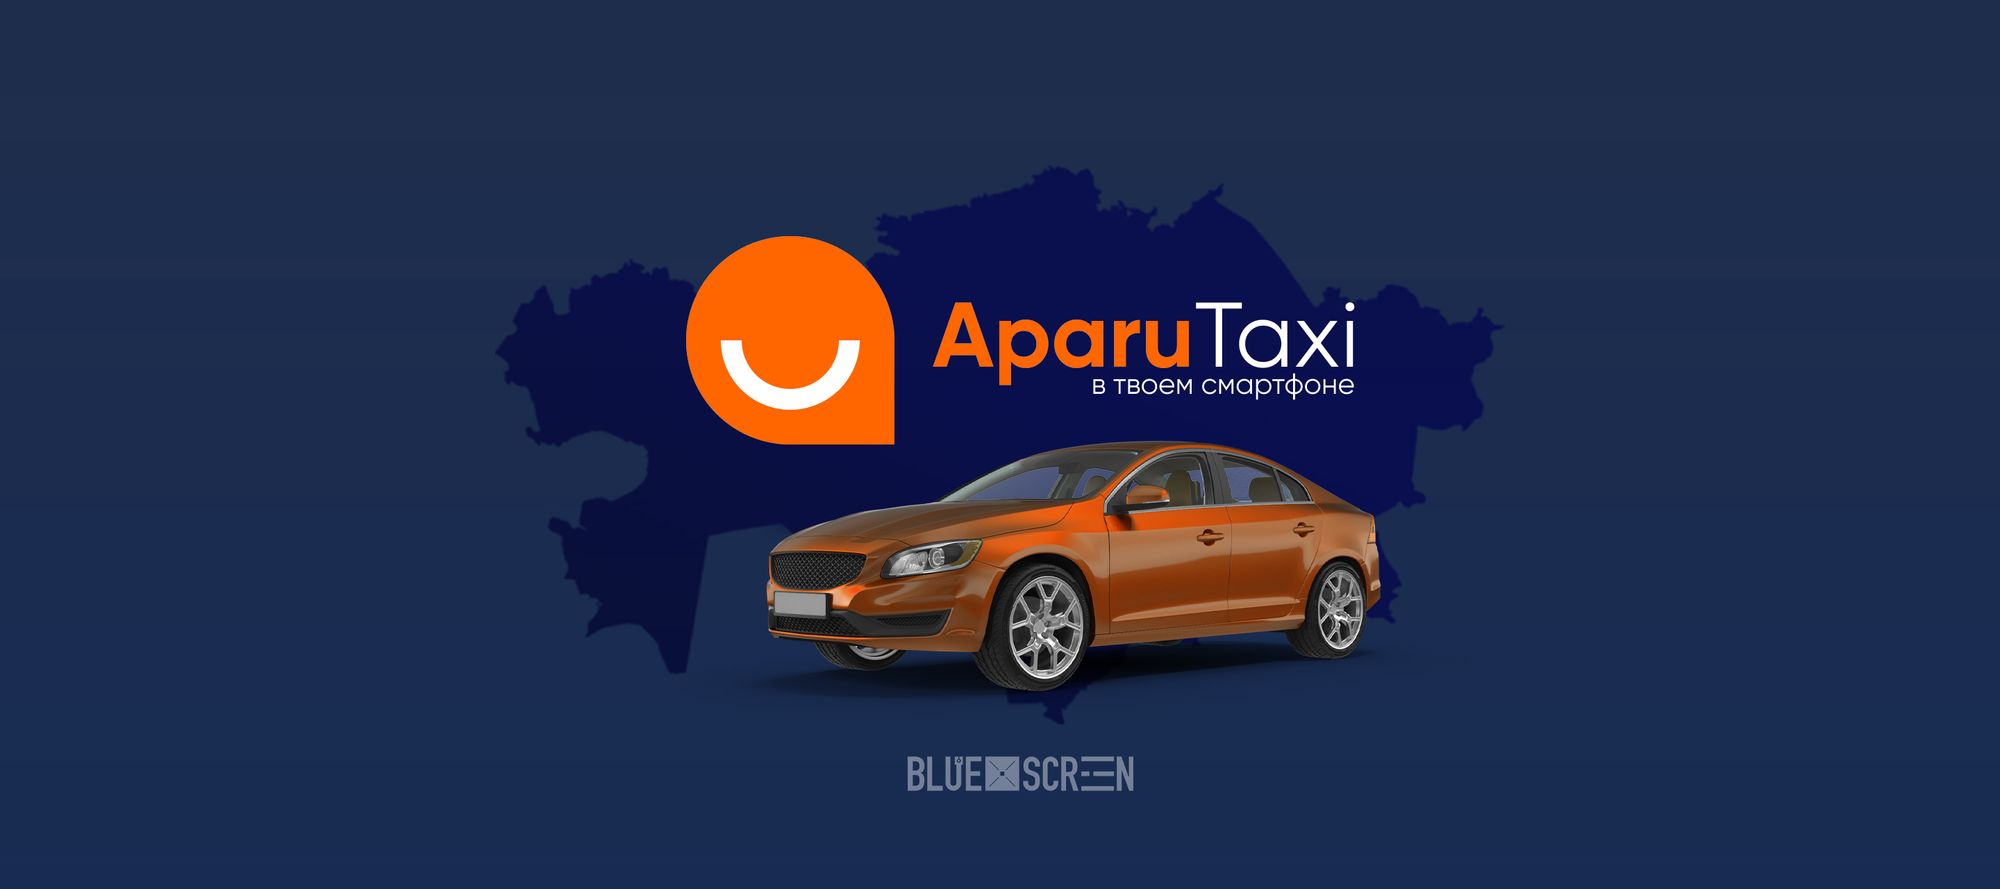 Выход нового сервиса такси планируется в Казахстане